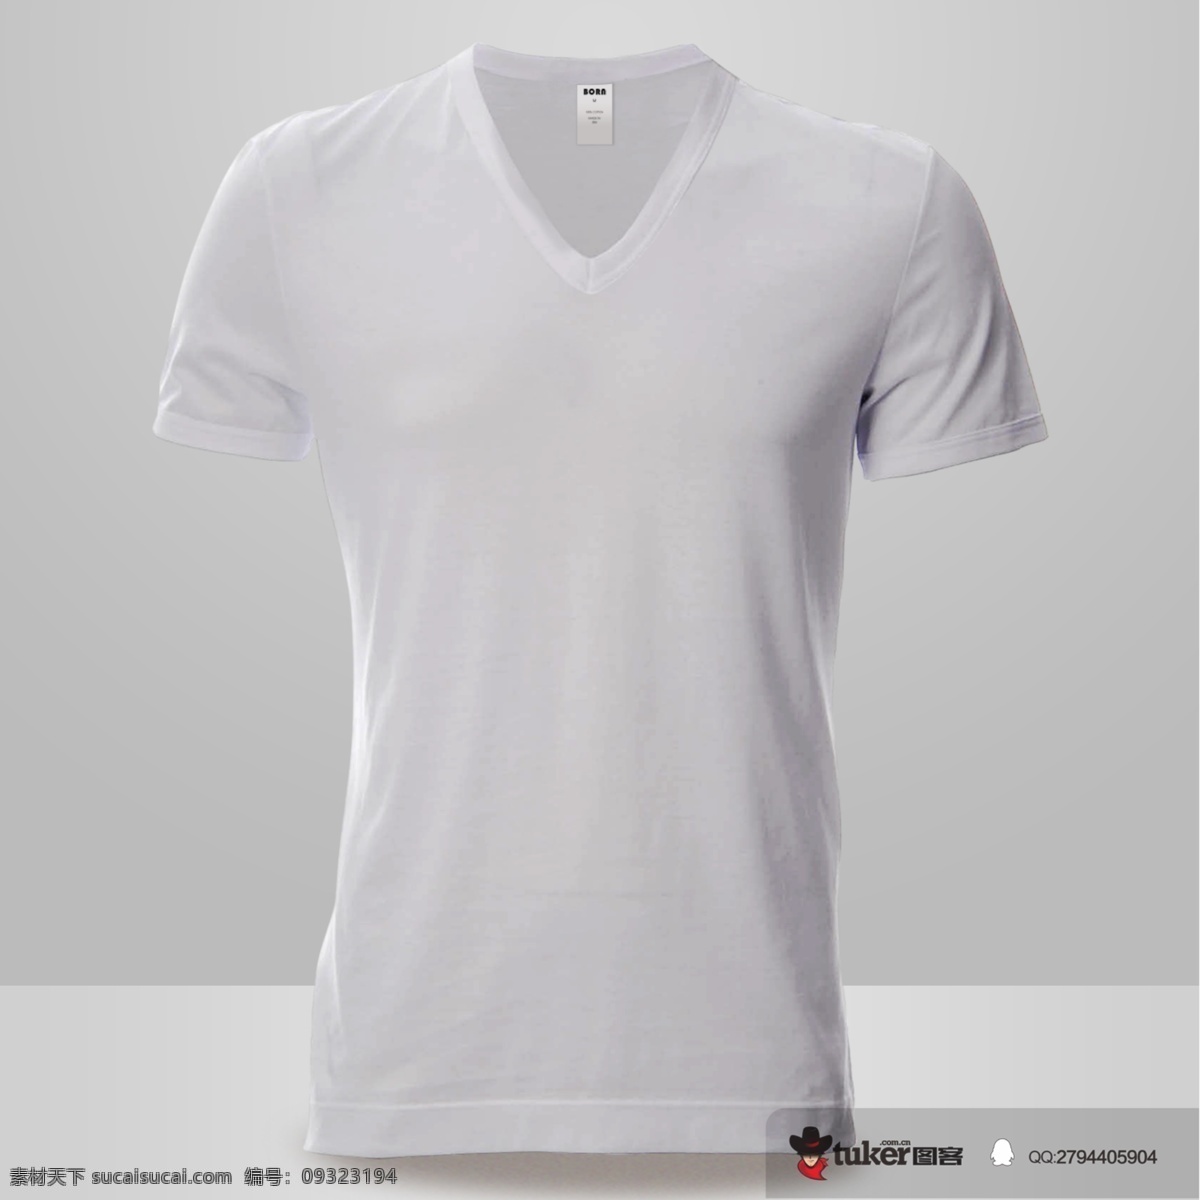 白色衬衫 智能对象 vi提案神器 样机 男士 t恤 衬衫 上衣 包装 模板 psd分层 灰色